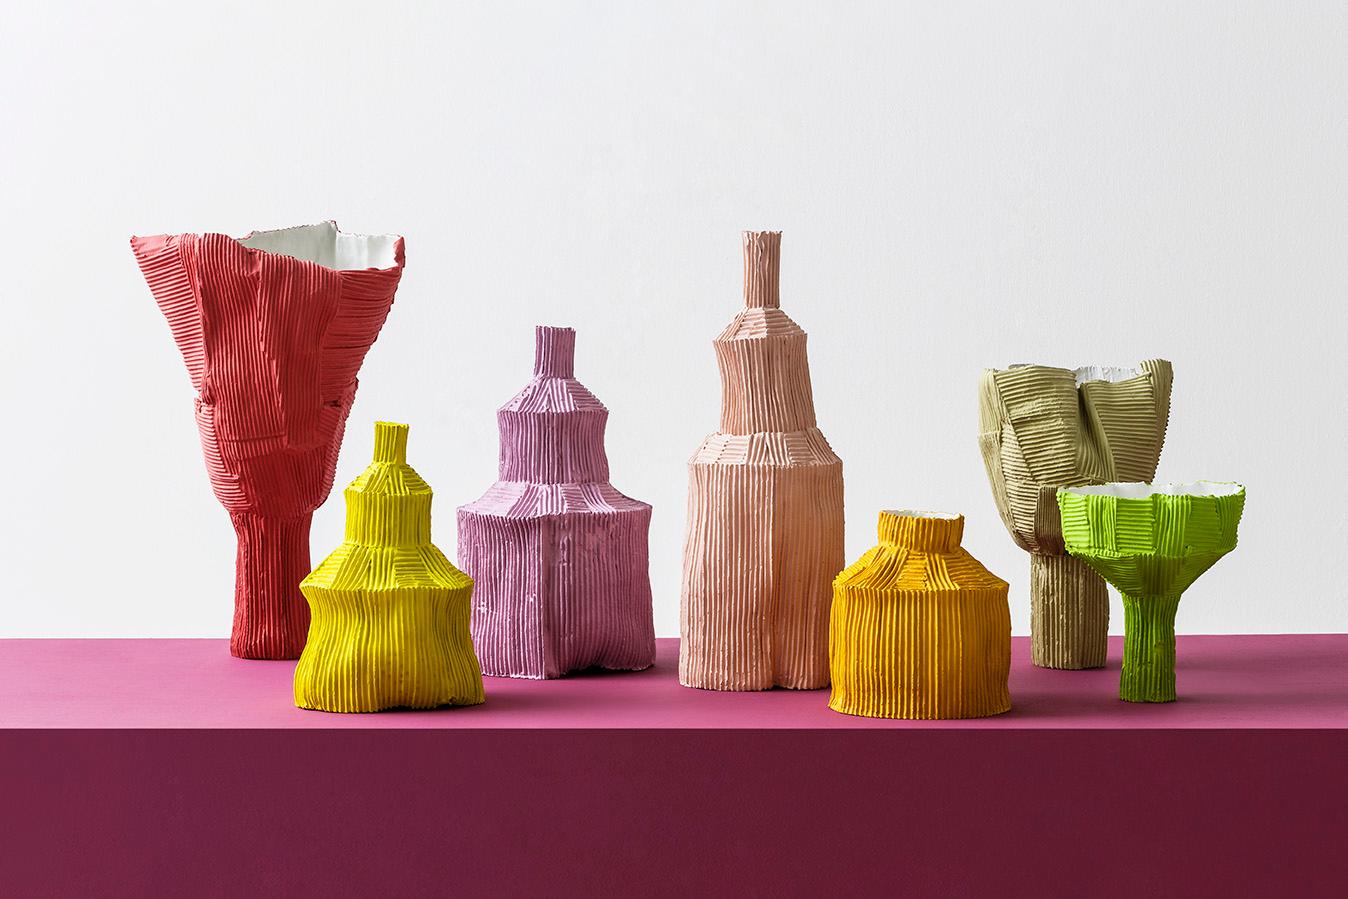 Die handgefertigten Stücke der Keramikerin Paola Paronetto verbinden Tradition mit Innovation und sind für all jene gedacht, die sich gerne mit raffinierten und exklusiven Gegenständen umgeben. Diese bezaubernde Vase aus der Serie Fide besteht aus